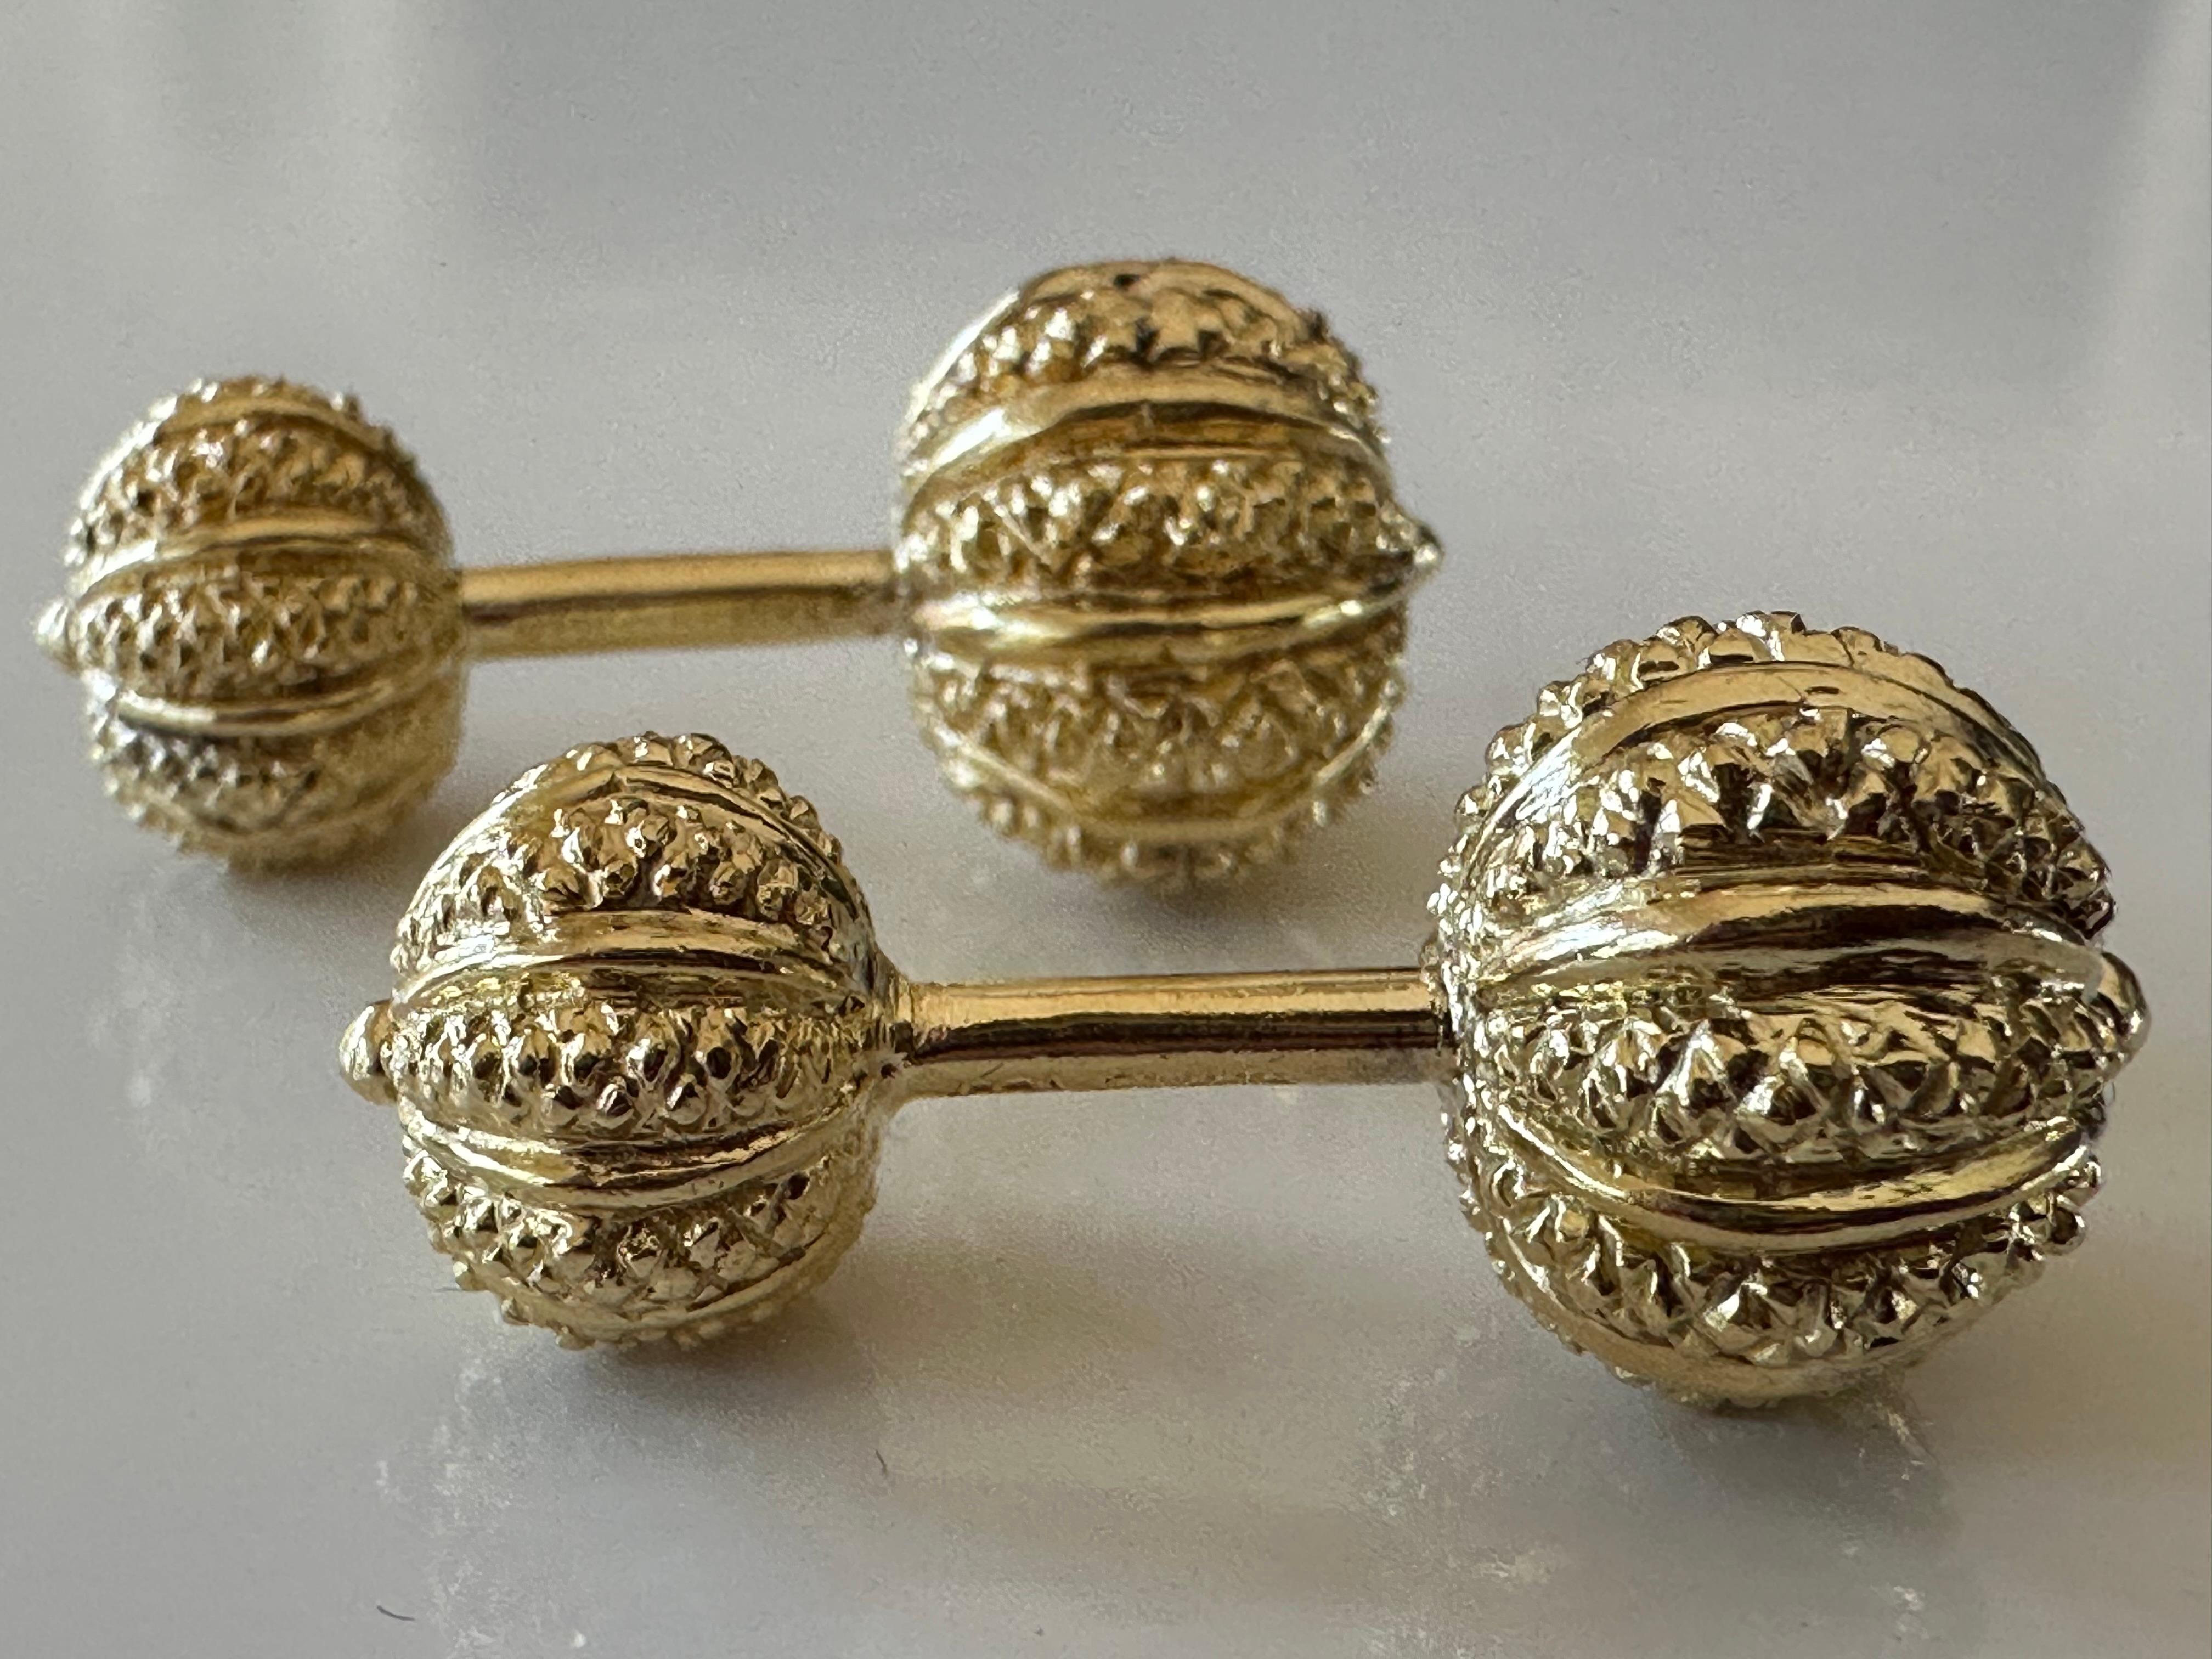 Ces boutons de manchette sont réalisés à la main en or jaune 18 carats riche et très texturé par le légendaire designer Jean Schlumberger pour Tiffany & Co. Ils mesurent 1,25 pouces de long, 12 mm (boule supérieure), 10 mm (boule inférieure) et sont